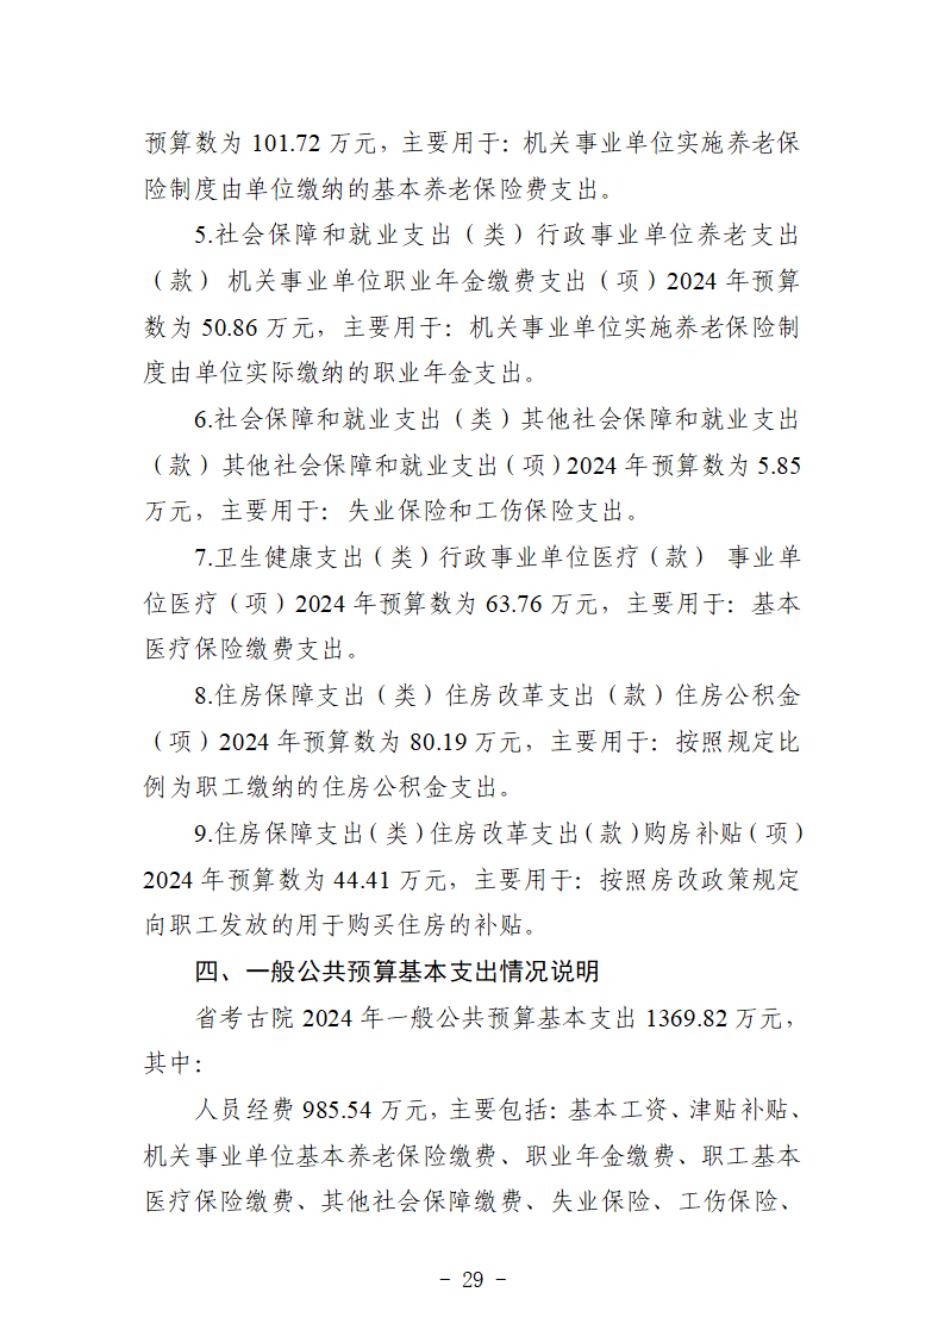 省考古院2024年四川省省级单位预算公开模板(3.14)_30.jpg